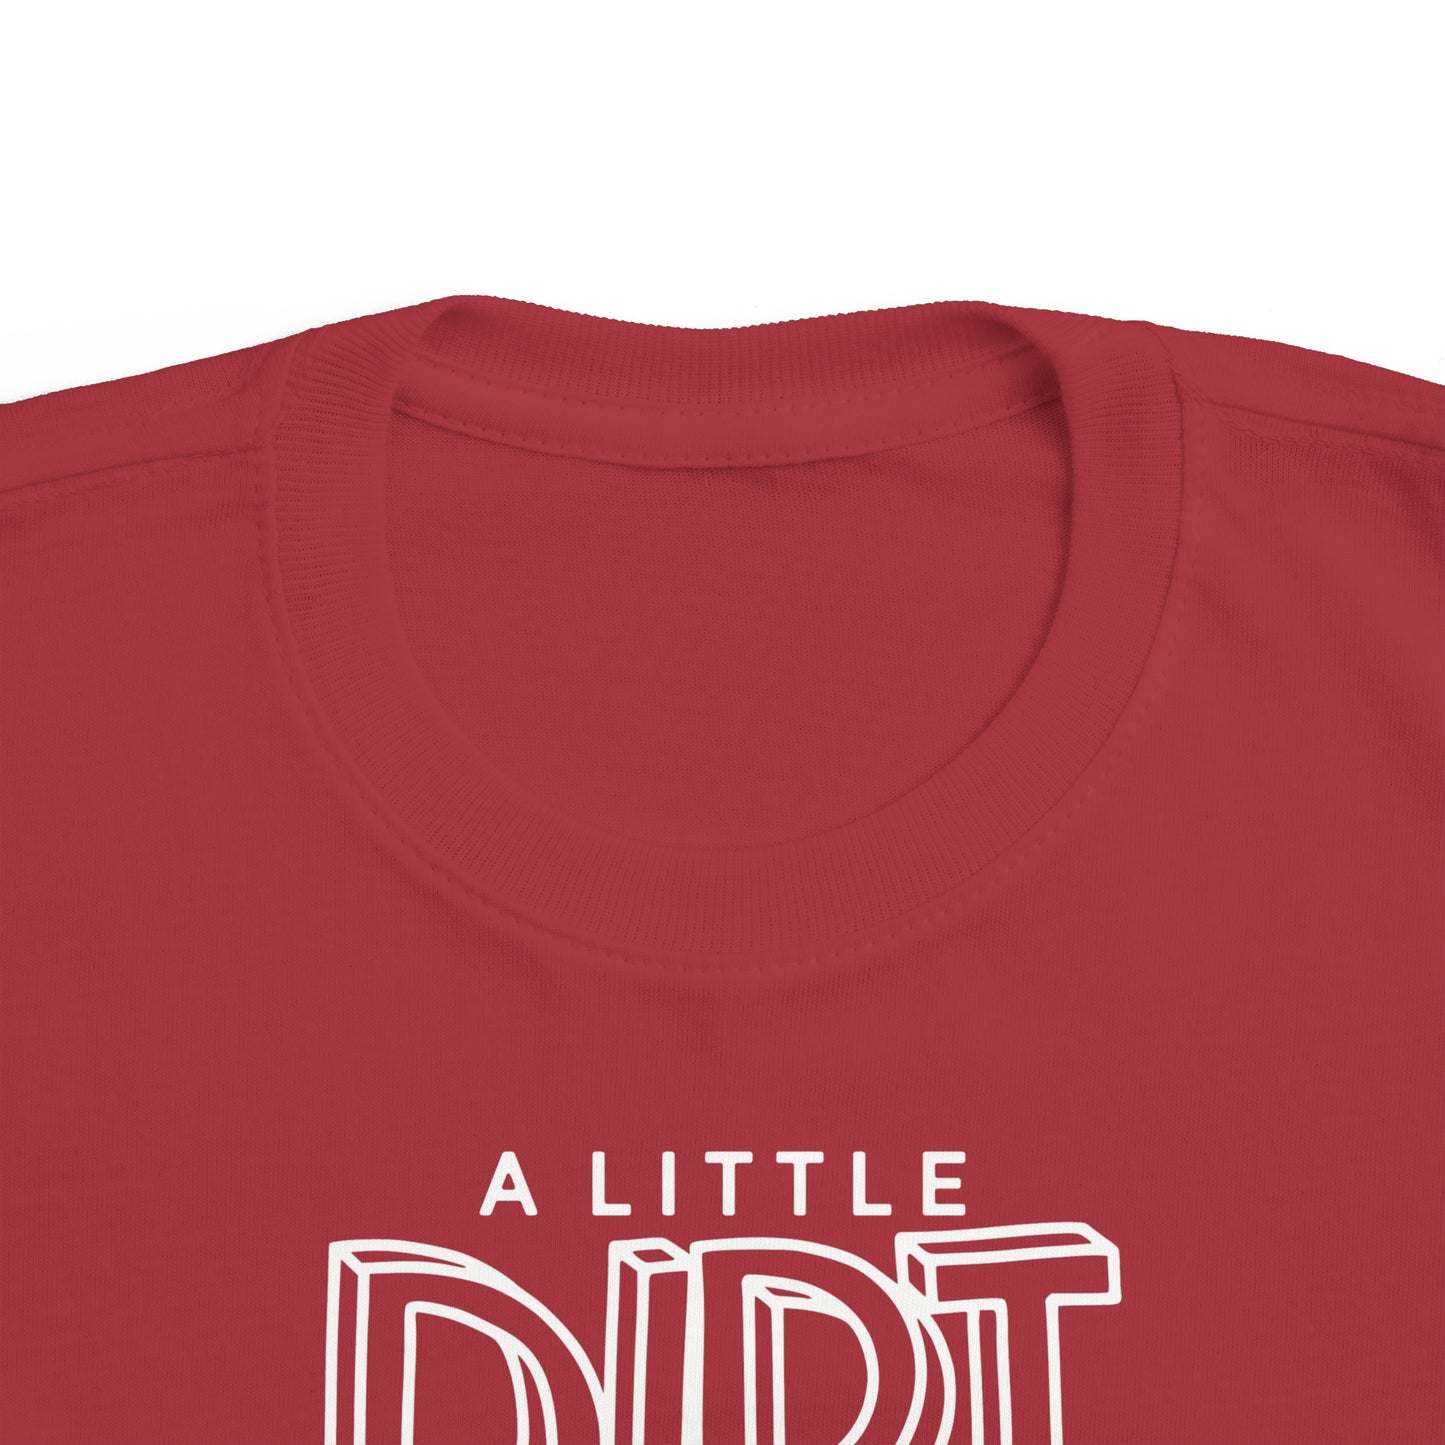 A Little Dirt Never Hurt - Toddler Tee